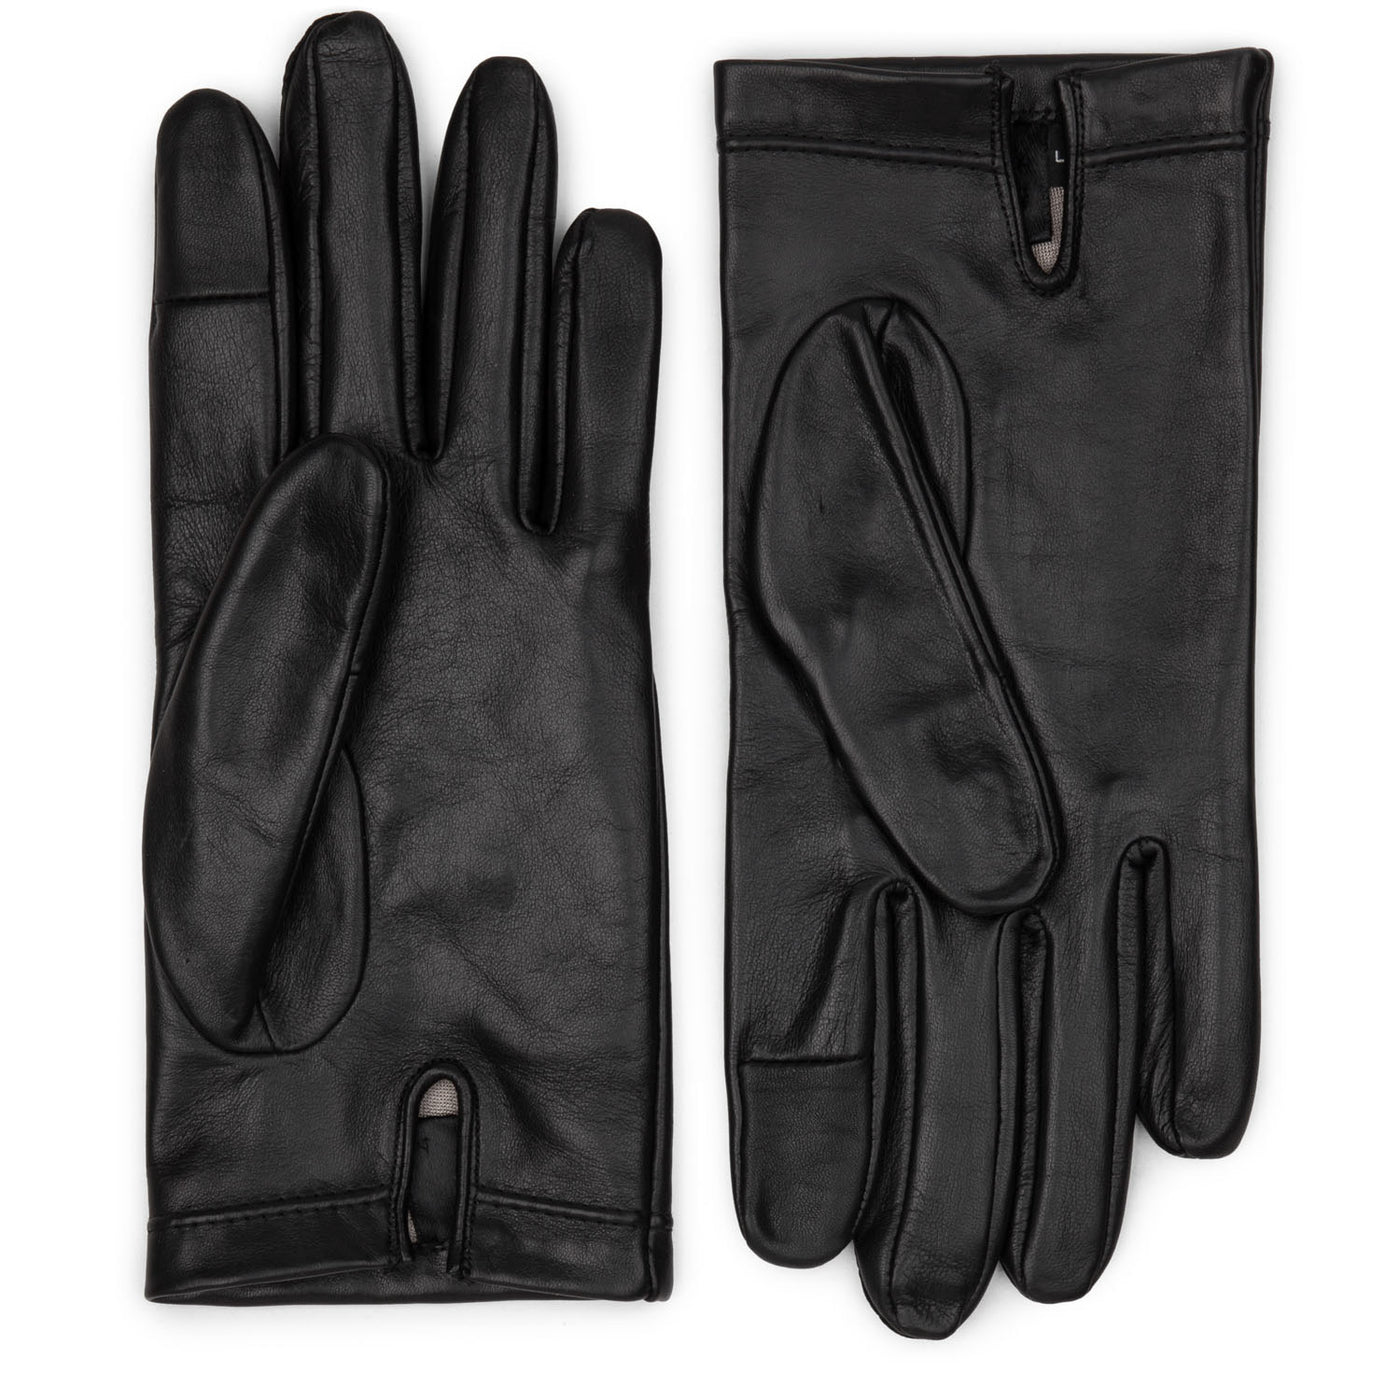 gants - accessoires gants homme #couleur_noir